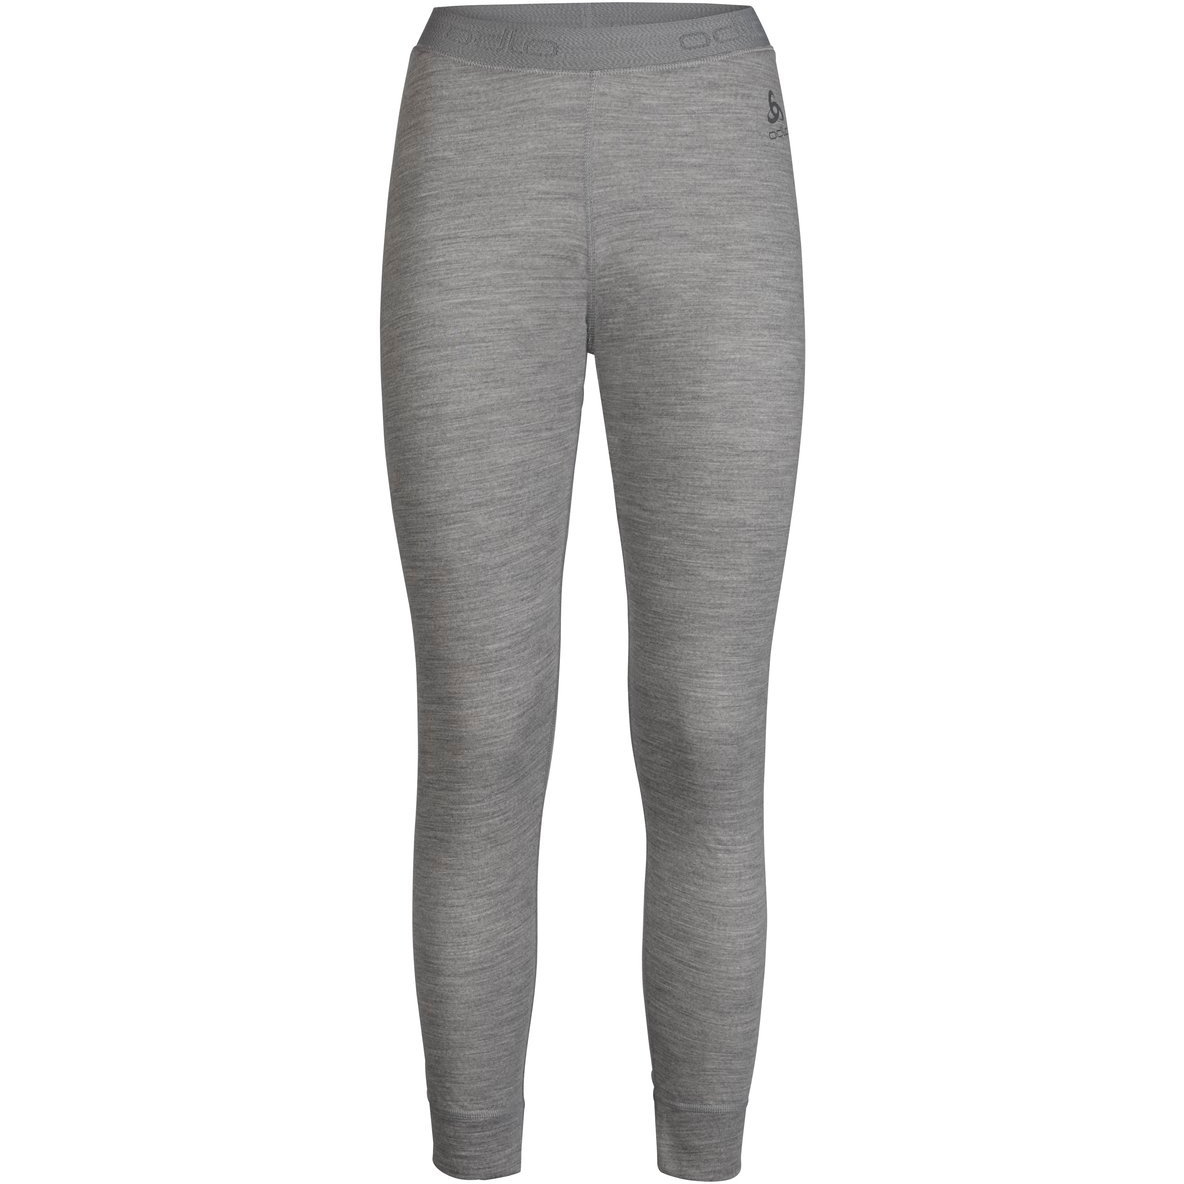 Produktbild von Odlo Damen NATURAL 100% MERINO WARM Sportunterwäsche Hose - grey melange - grey melange